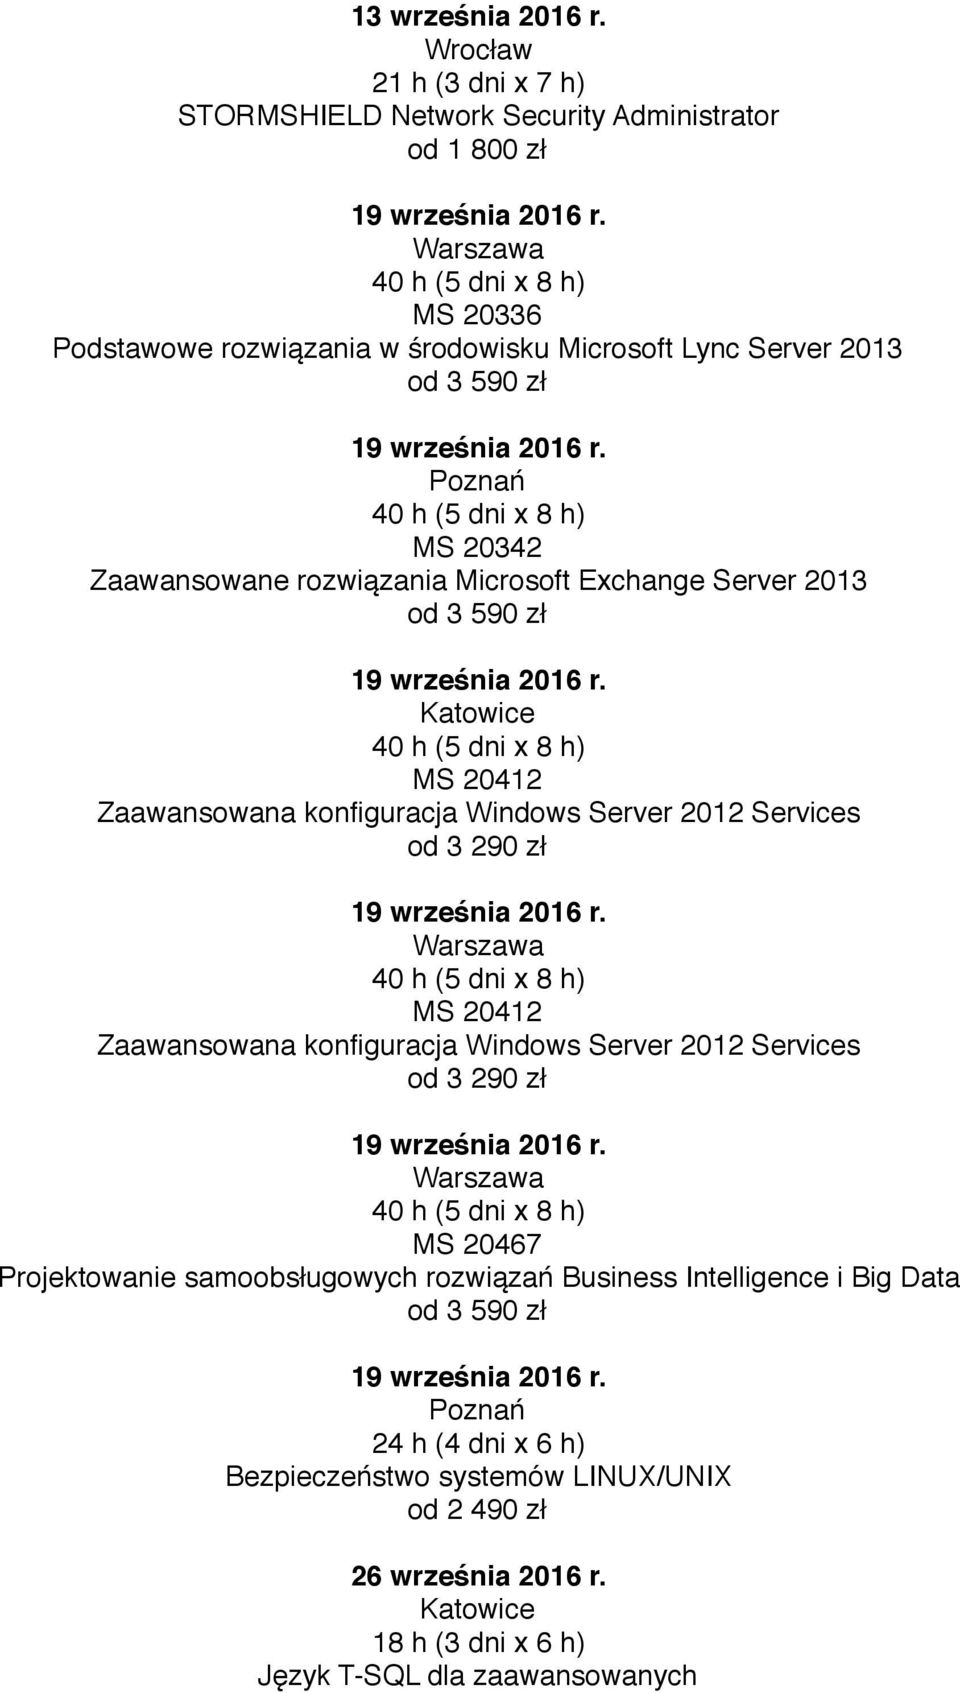 Zaawansowane rozwiązania Microsoft Exchange Server 2013 MS 20467 Projektowanie samoobsługowych